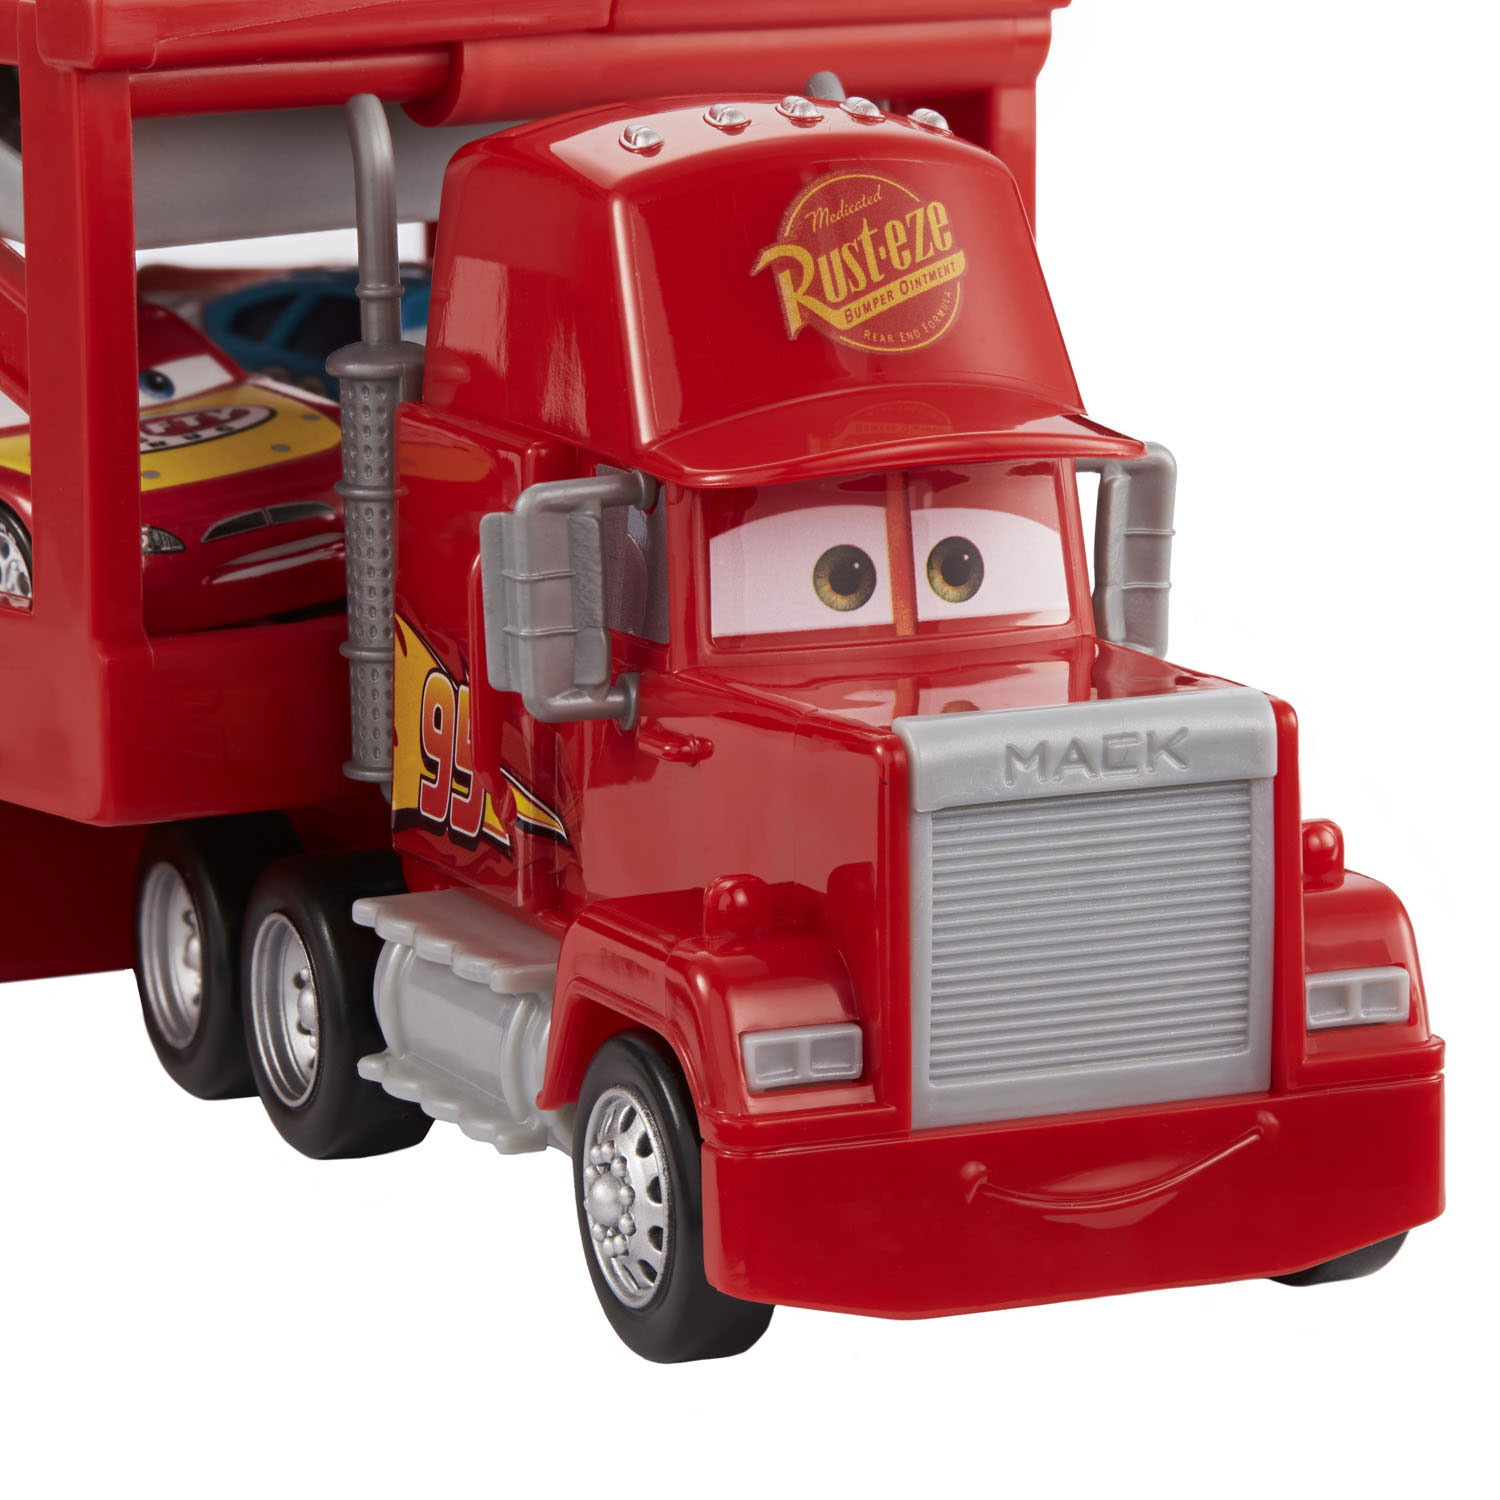 Disney Pixar Cars Transporteur Mack Hauler